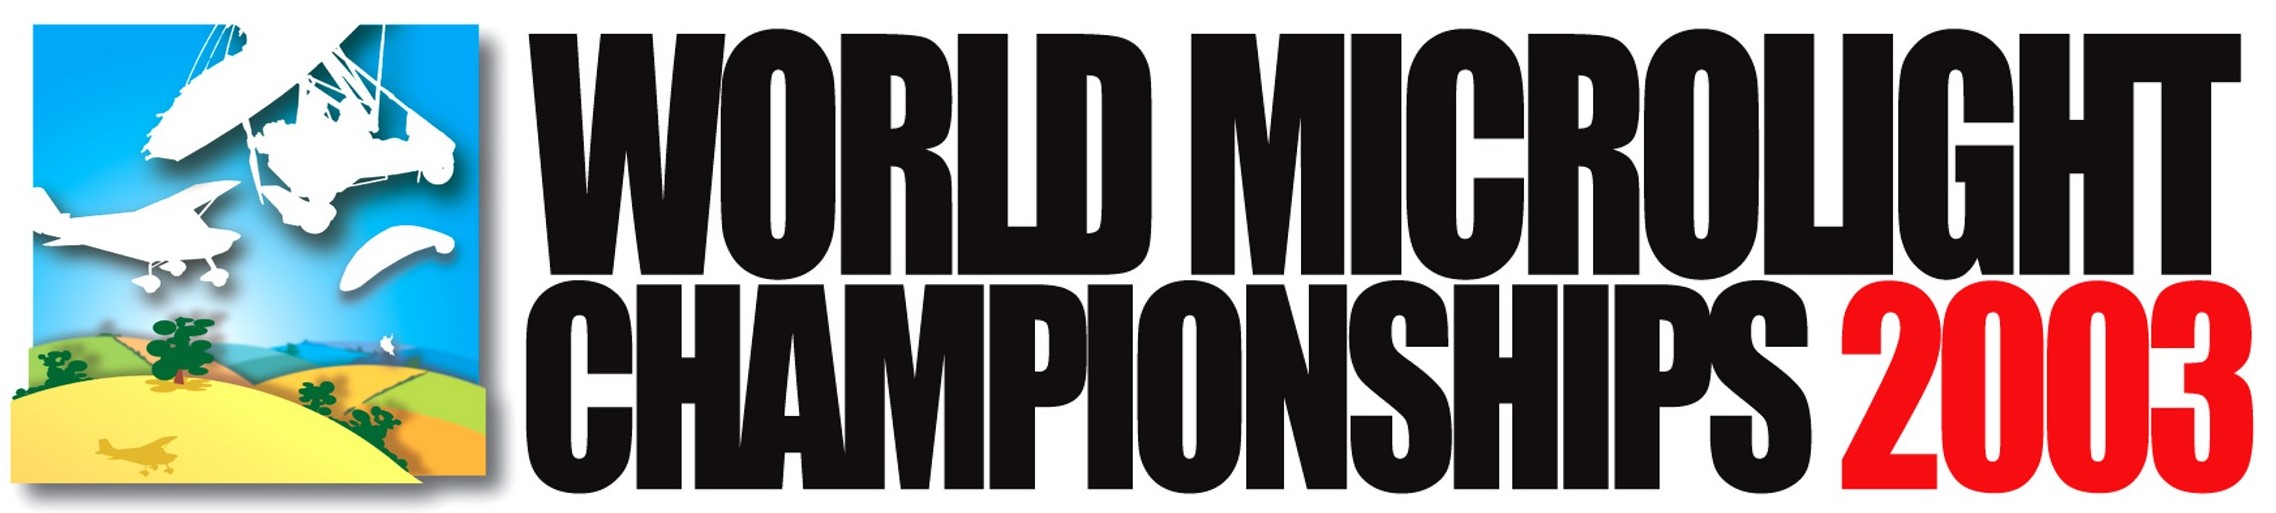 Full size WMC 2003 official logo